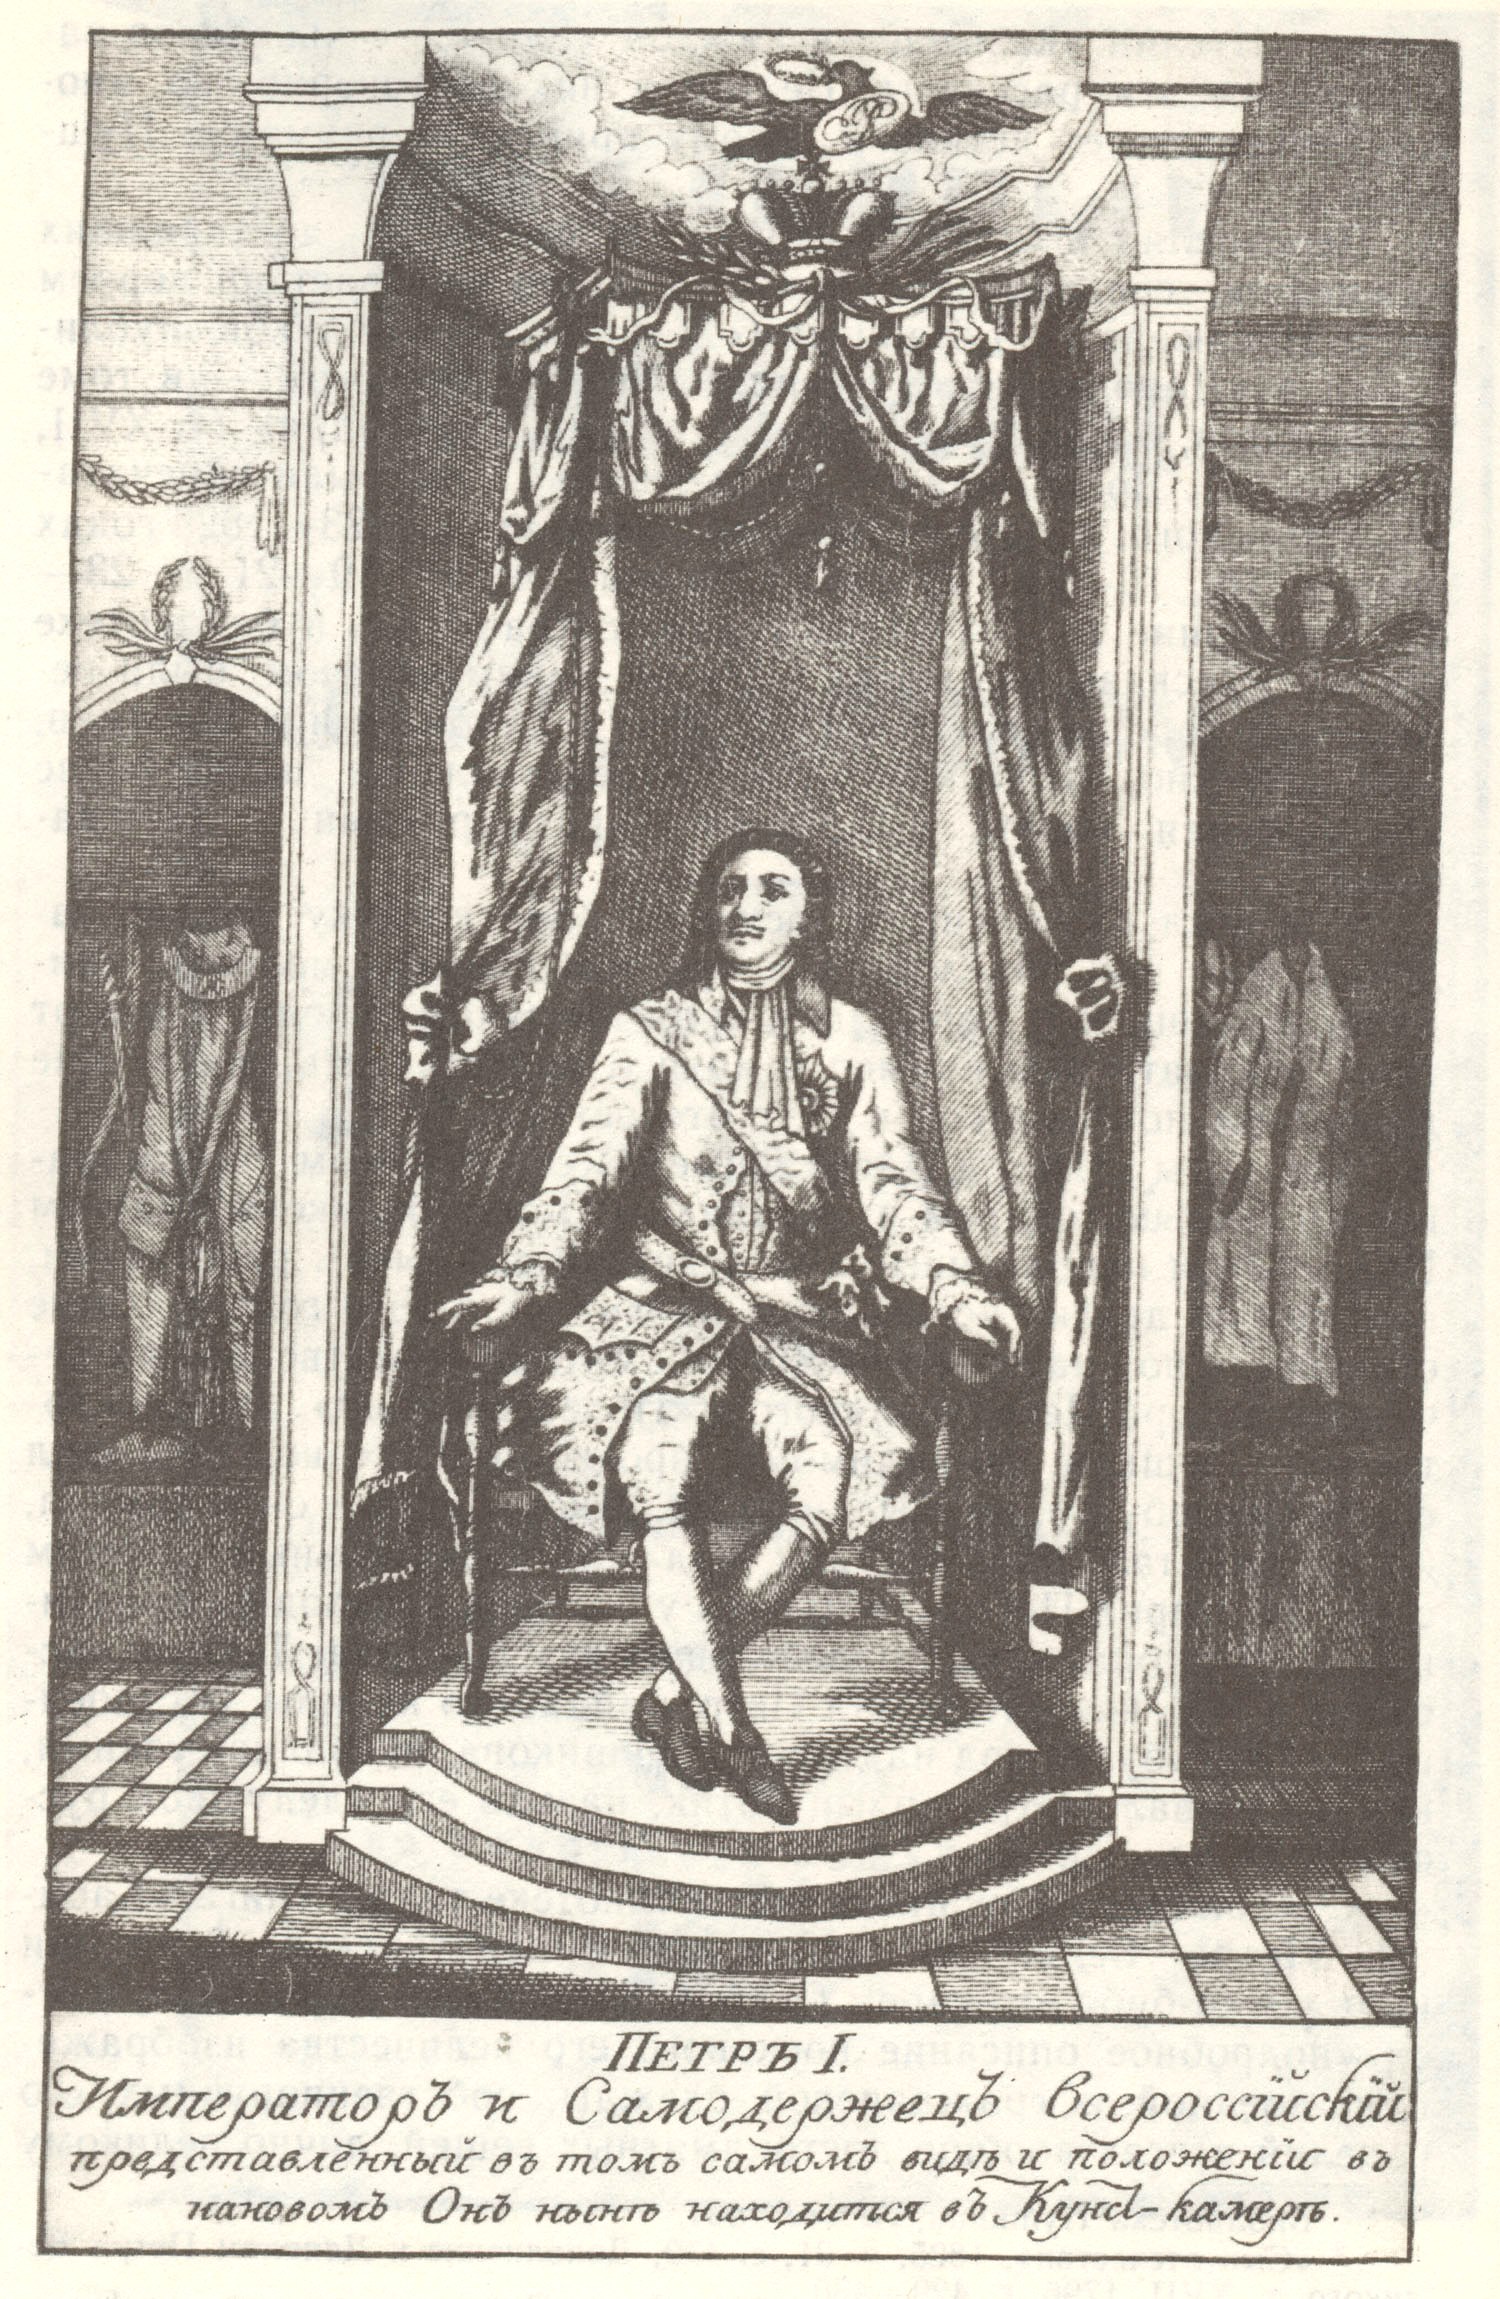 Восковое изображение Петра I. Гравюра из книги О. Беляева "Кабинет Петра Великого" СПб., 1800.